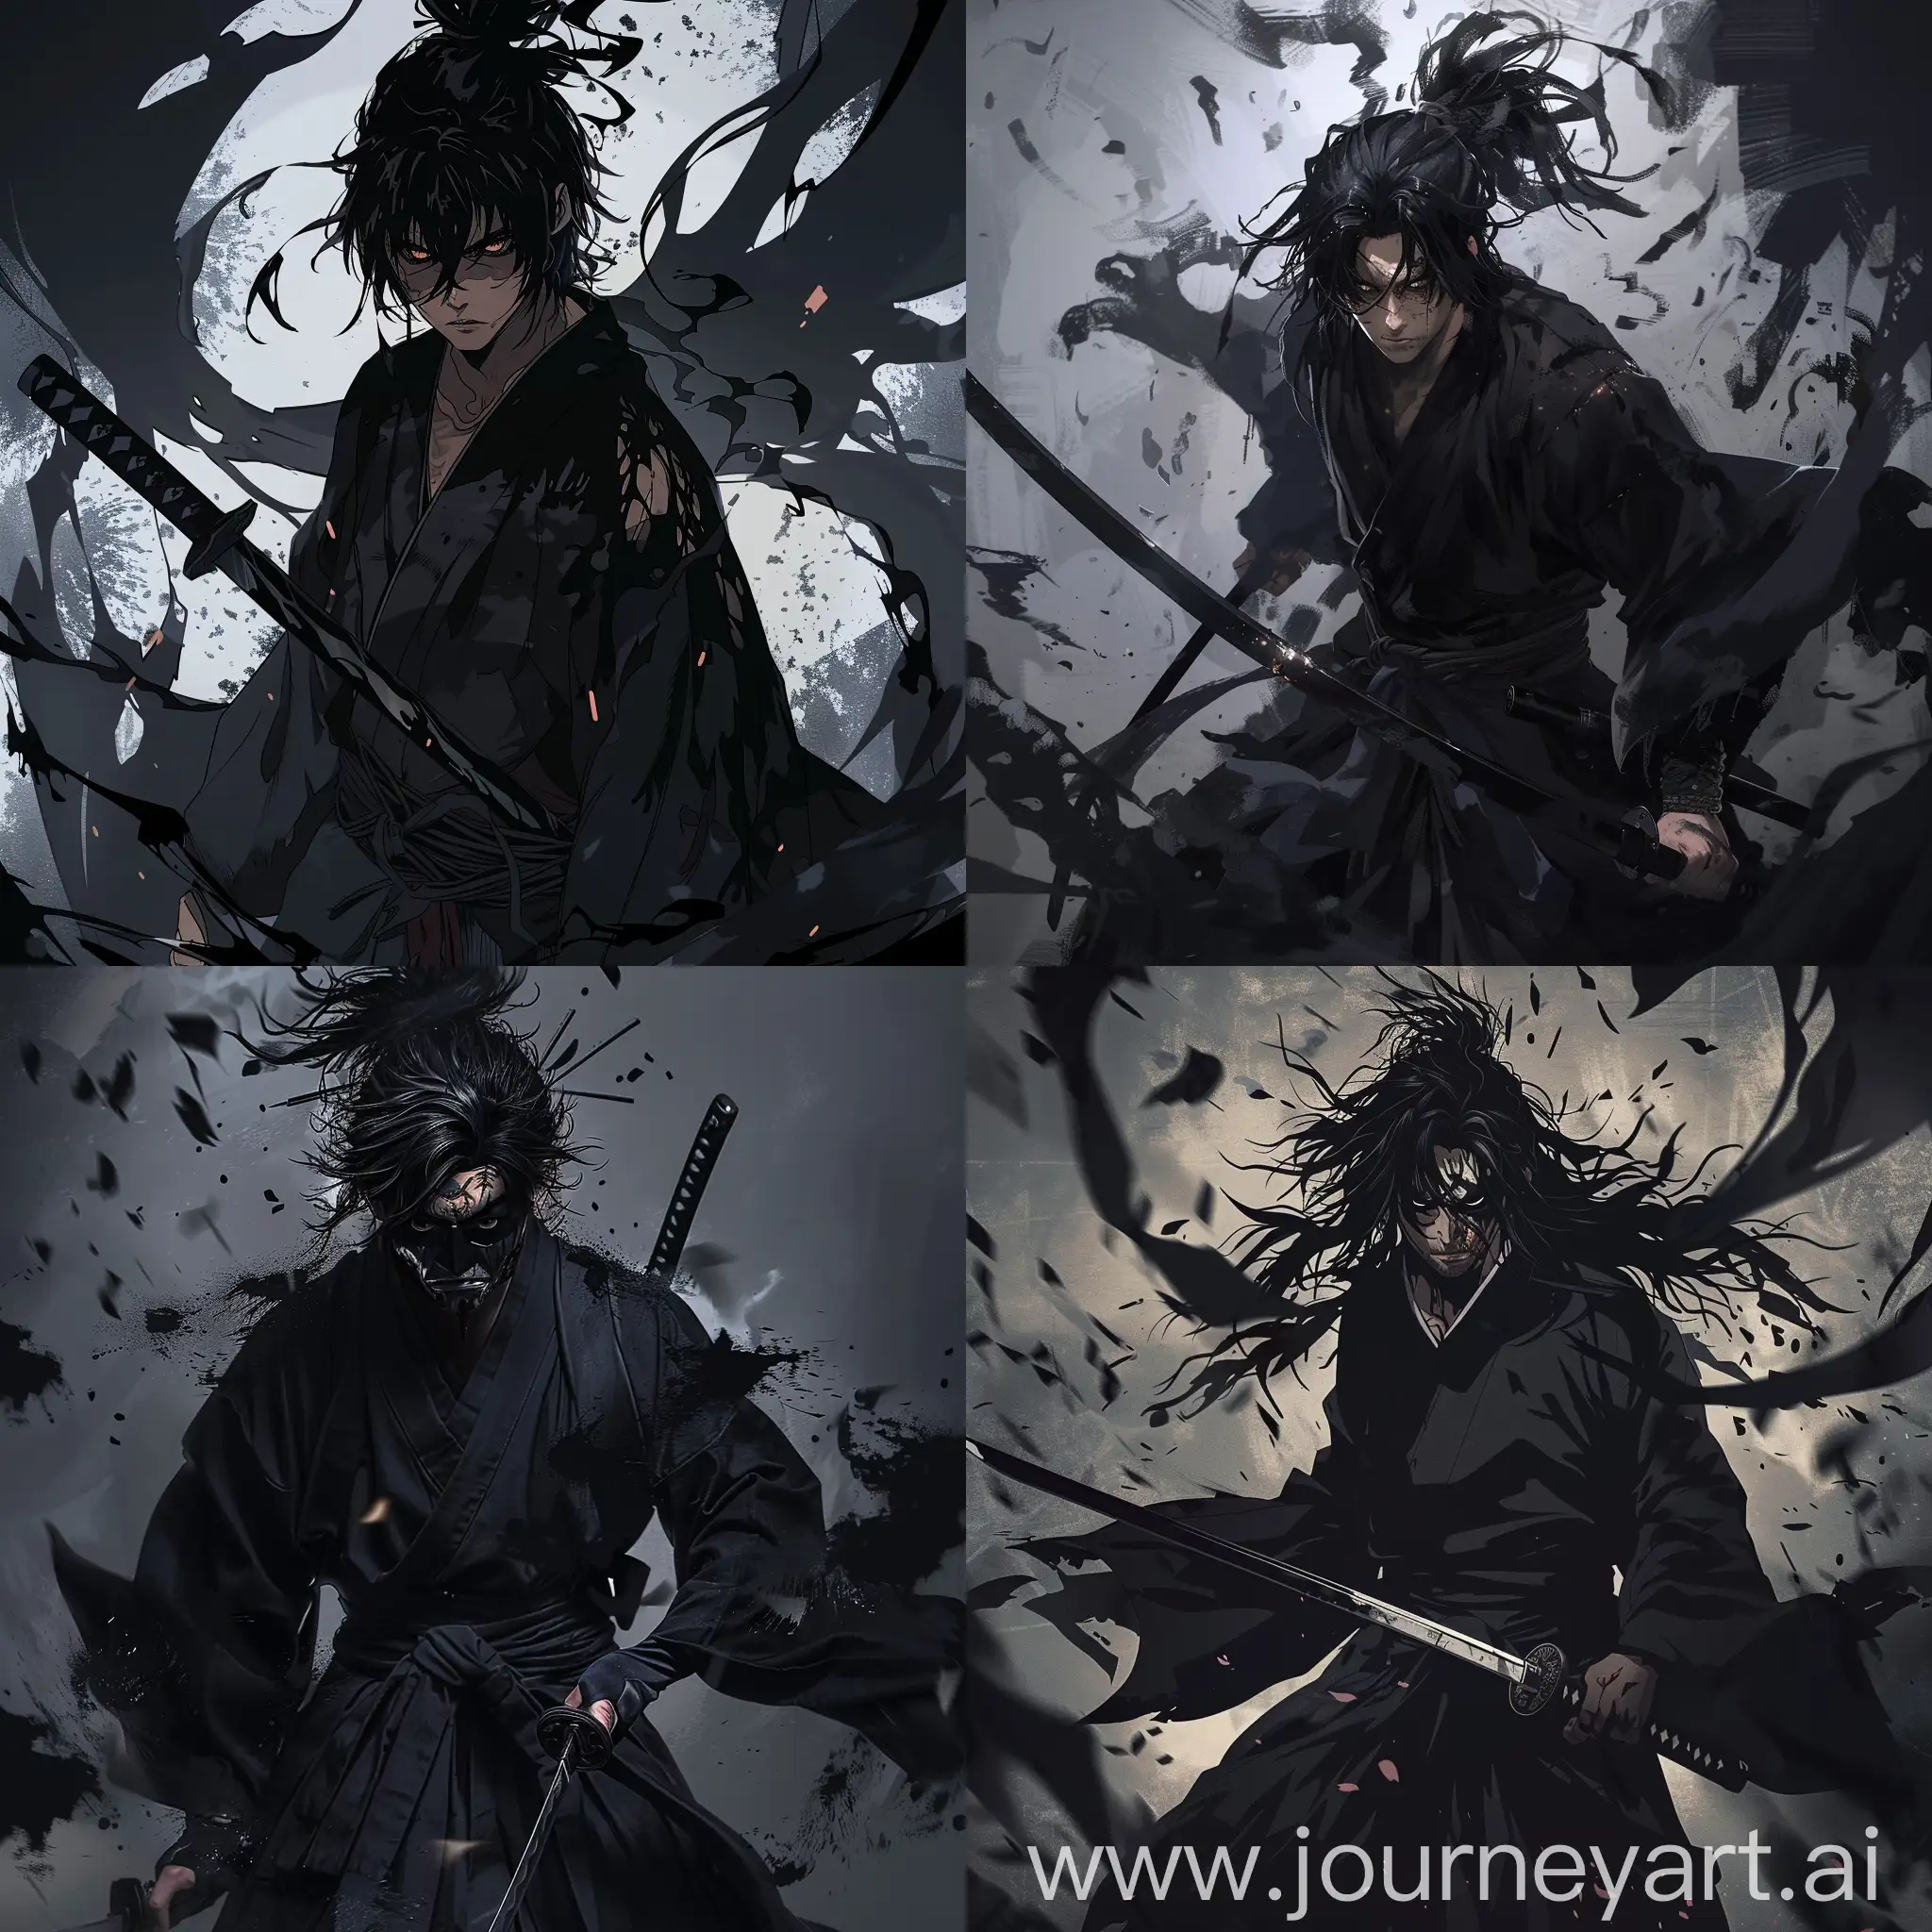 Brooding-Vagabond-Samurai-with-Oni-Mask-and-Shadowy-Aura